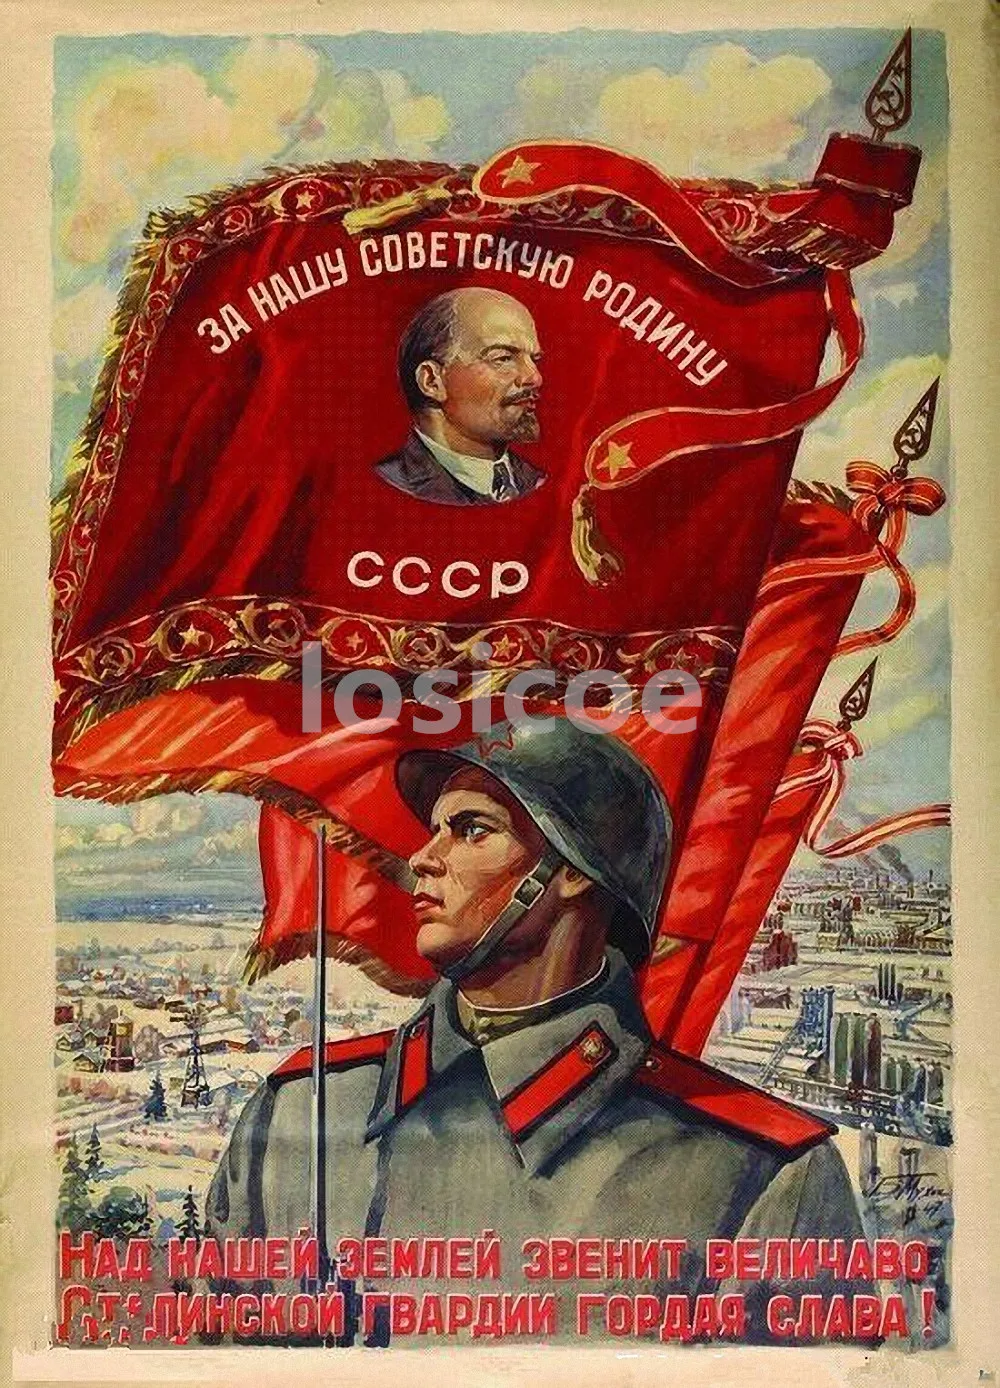 Ленин Сталин Маркс энгелс Мао Цзэдун советские лидеры коммунистический плакат 30X42 см ретро крафт-бумага наклейки на стену домашний декор - Цвет: Синий